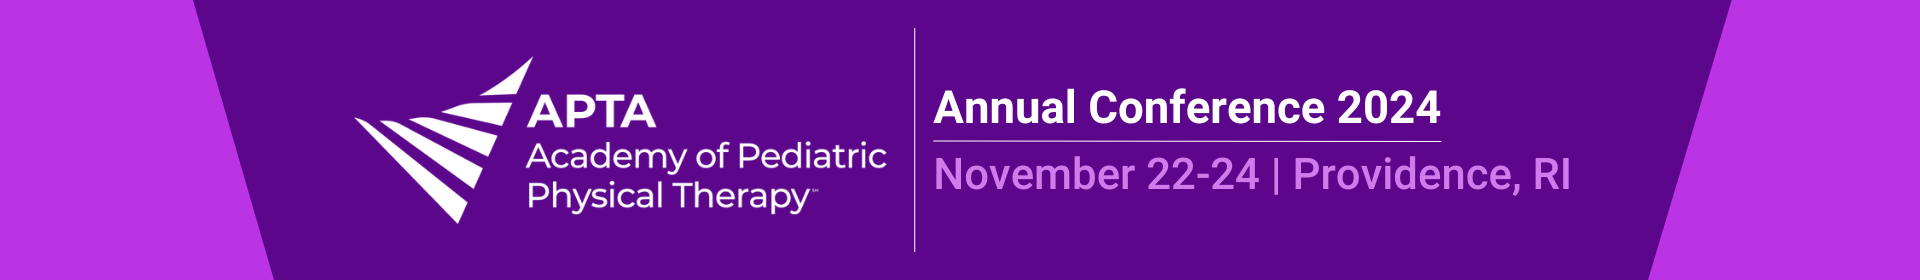 2024 APTA Pediatrics Annual Conference Event Banner